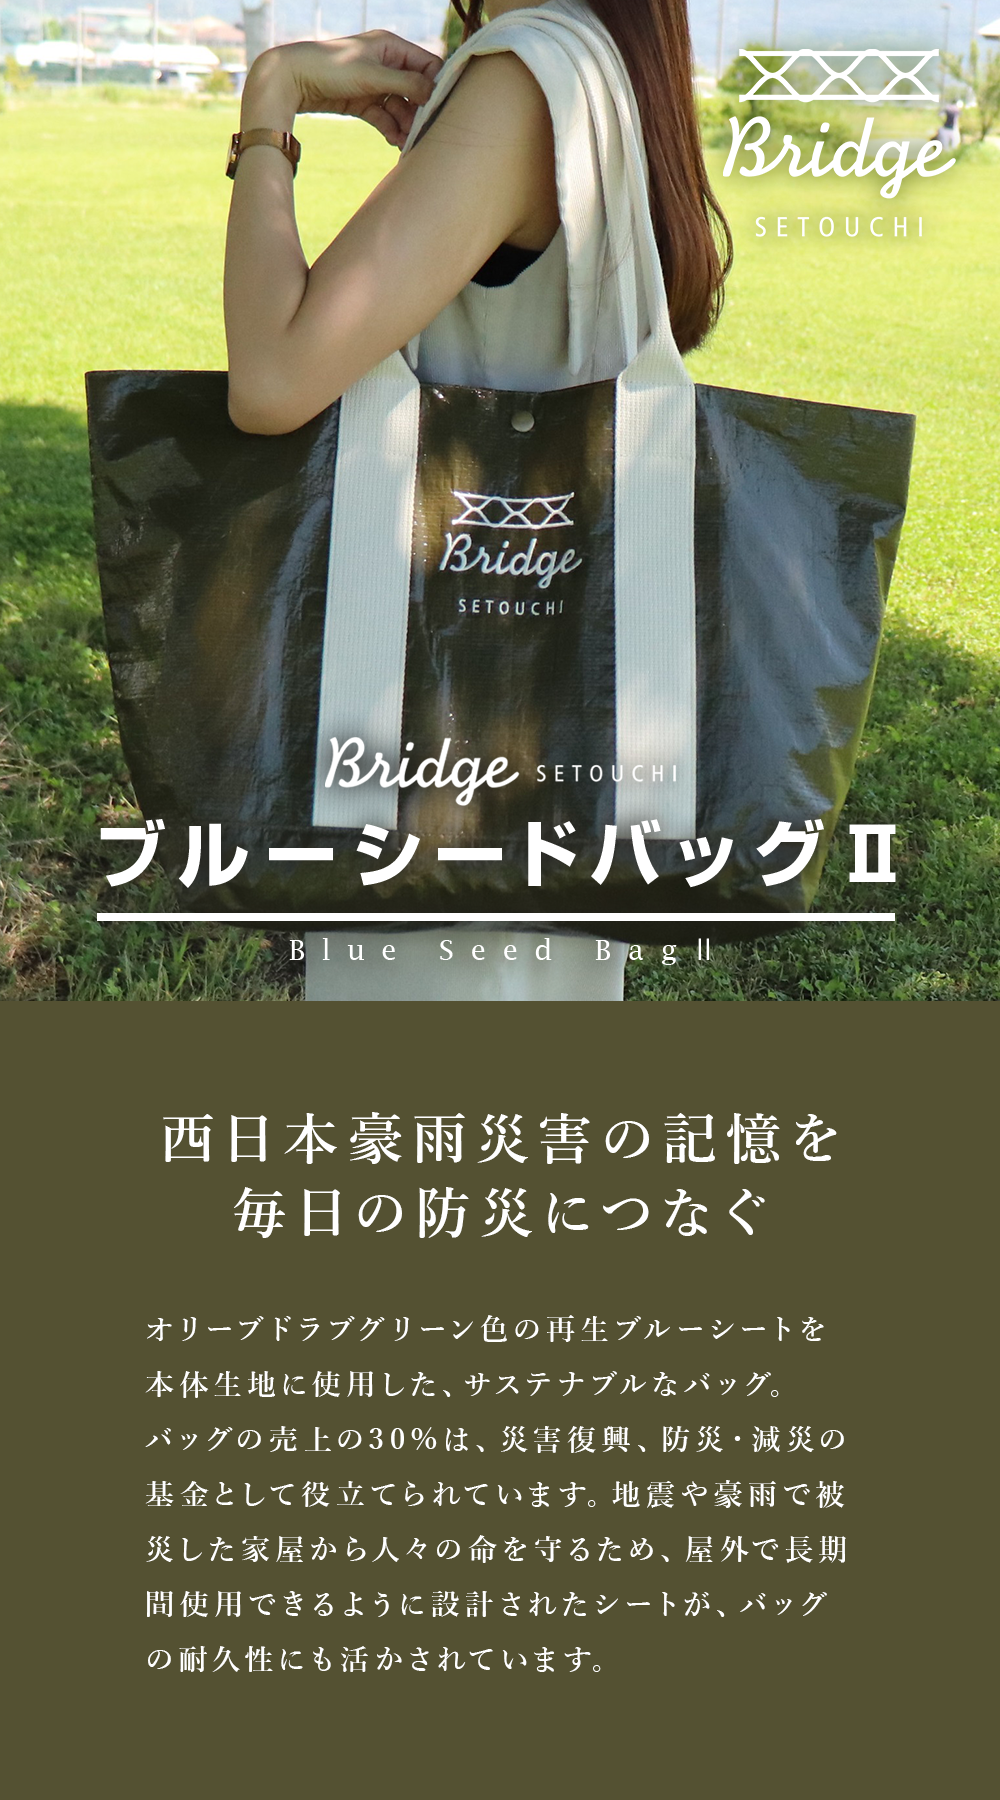 BRIDGE SETOUCHI ブルーシードバッグⅡ – 萩原工業公式オンラインショップ